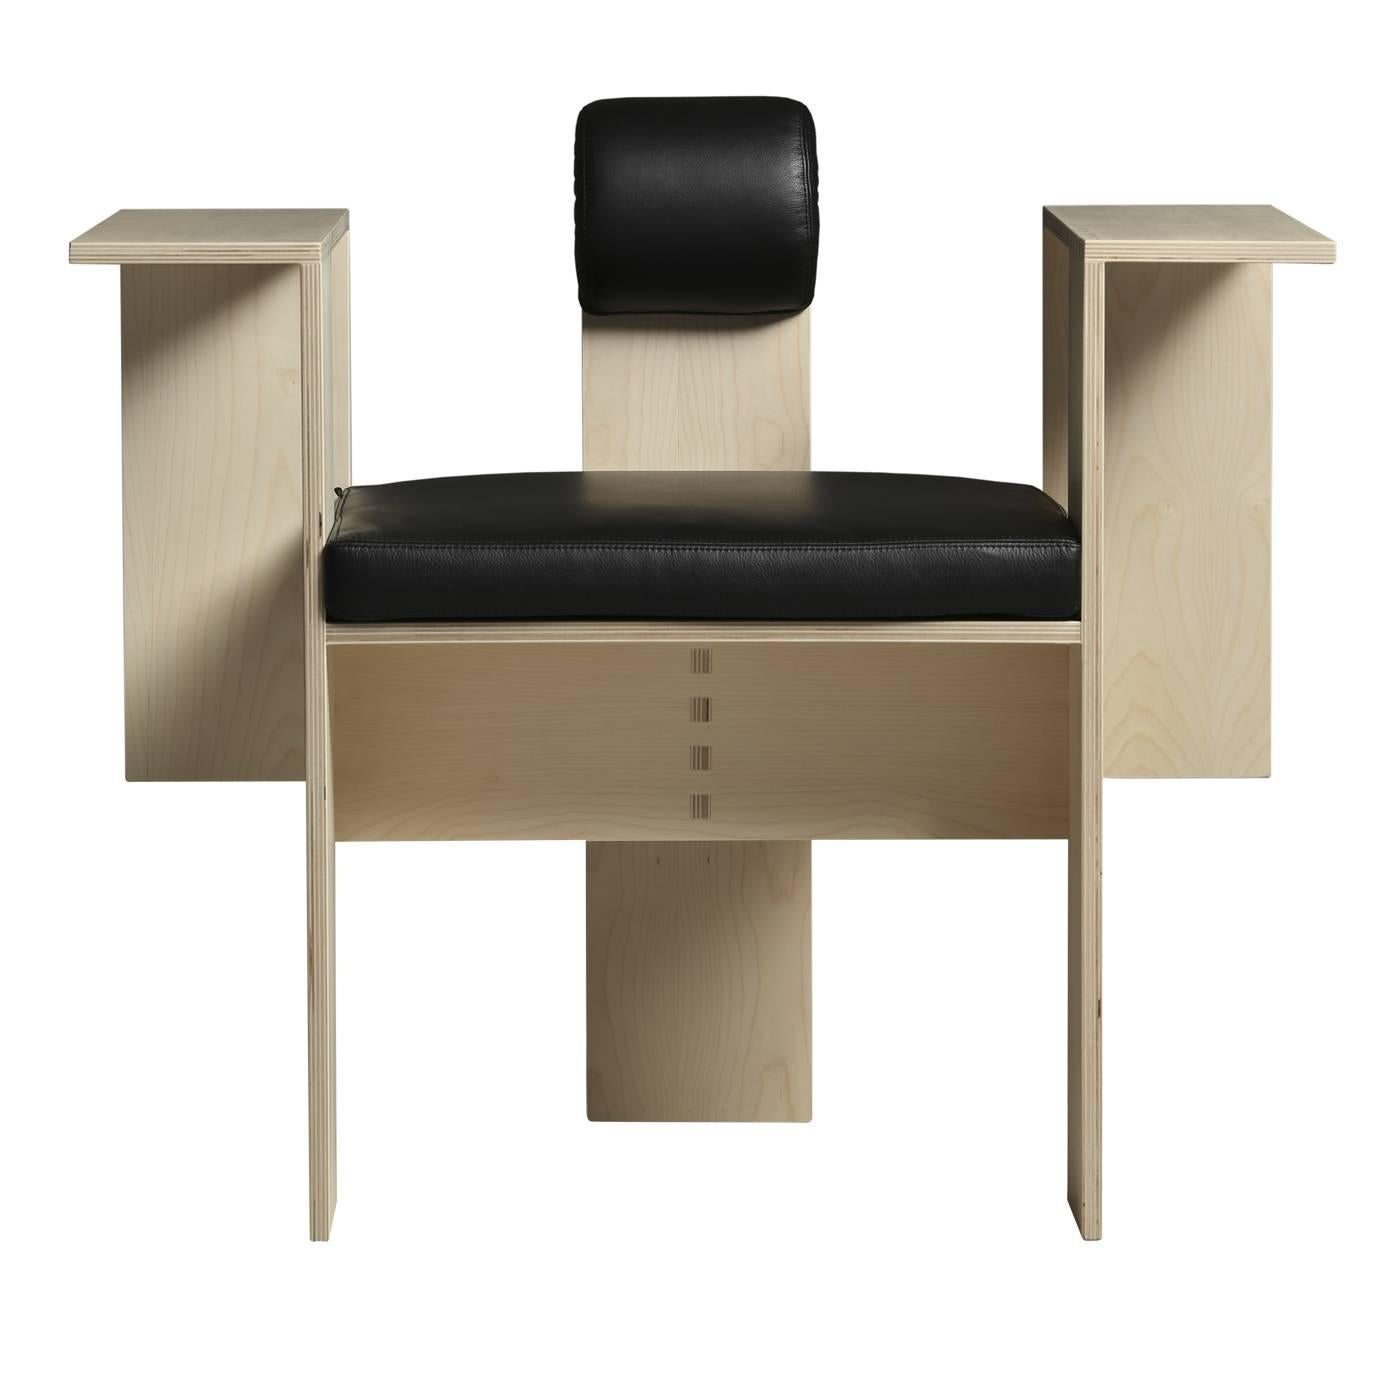 Dieser von Mario Botta entworfene Stuhl ist eine funktionelle Skulptur, die in jedem Raum eine beeindruckende Wirkung erzielt. Die geometrischen Formen, die seine zeitgenössische Silhouette ausmachen, sind aus Birkensperrholz mit Ahornfurnier